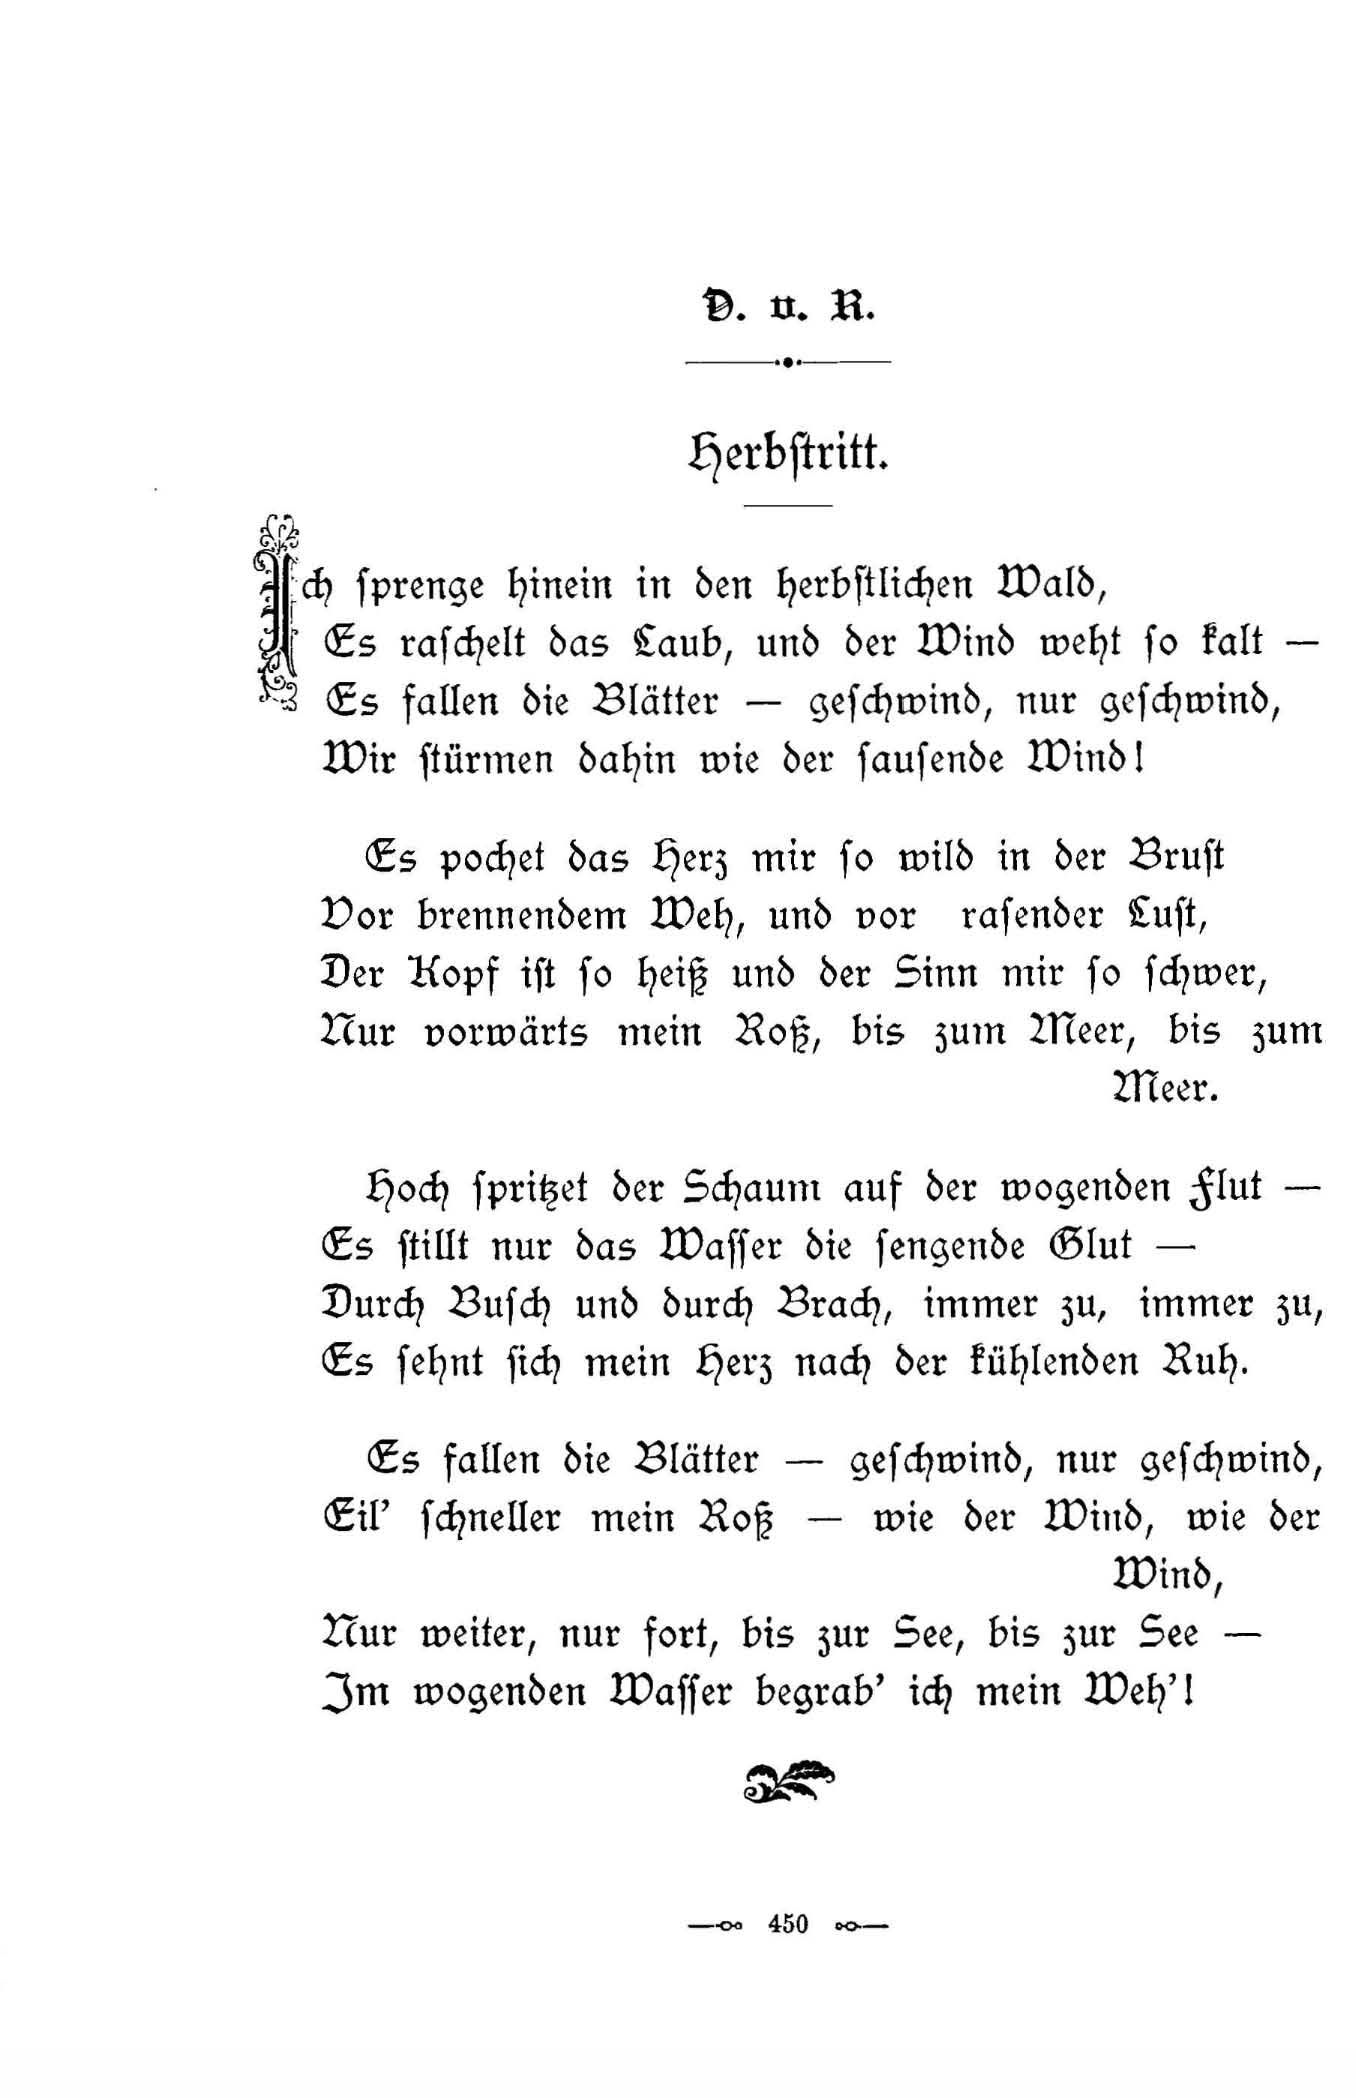 Herbstritt (1896) | 1. (450) Põhitekst